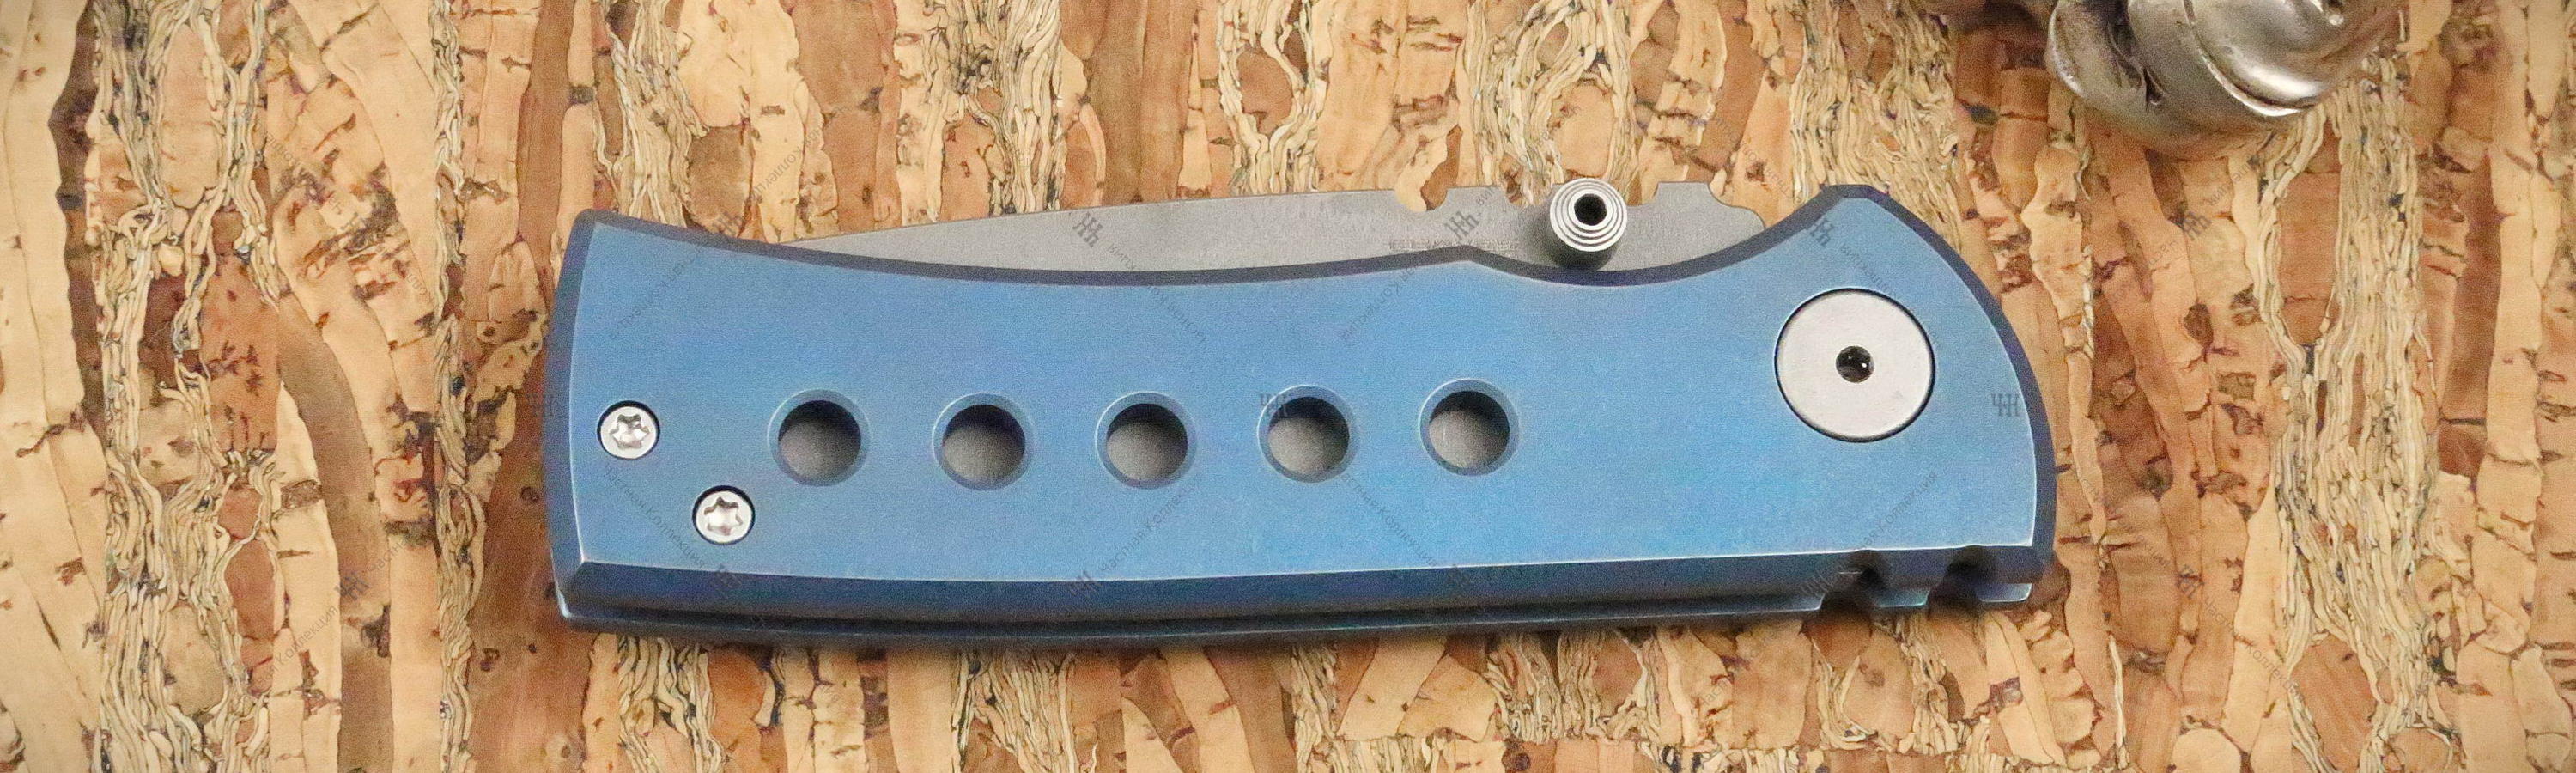 Anodized titanium handle